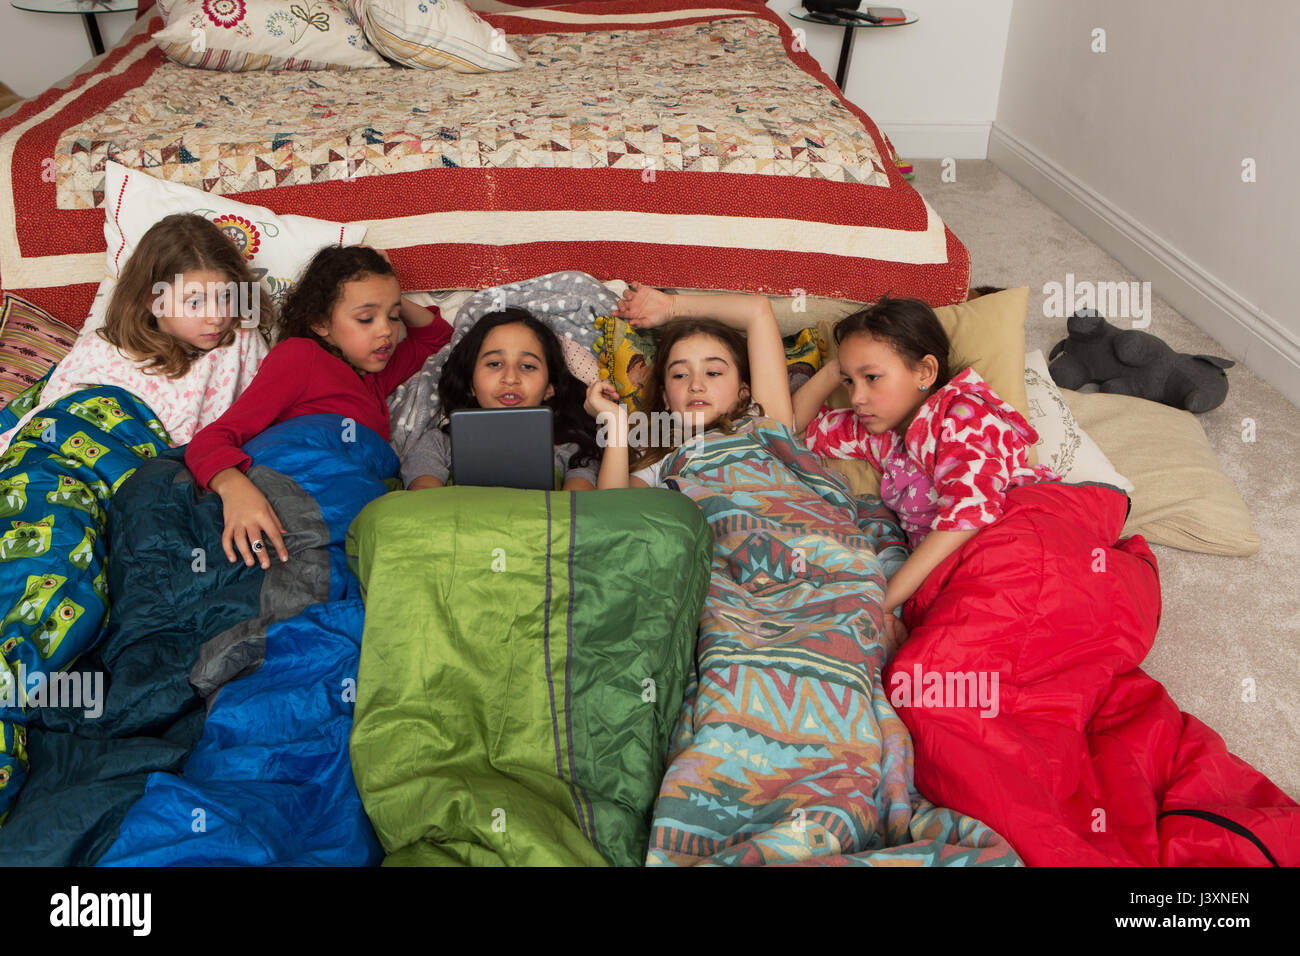 Les filles dans des sacs de couchage au pyjama using digital tablet Banque D'Images